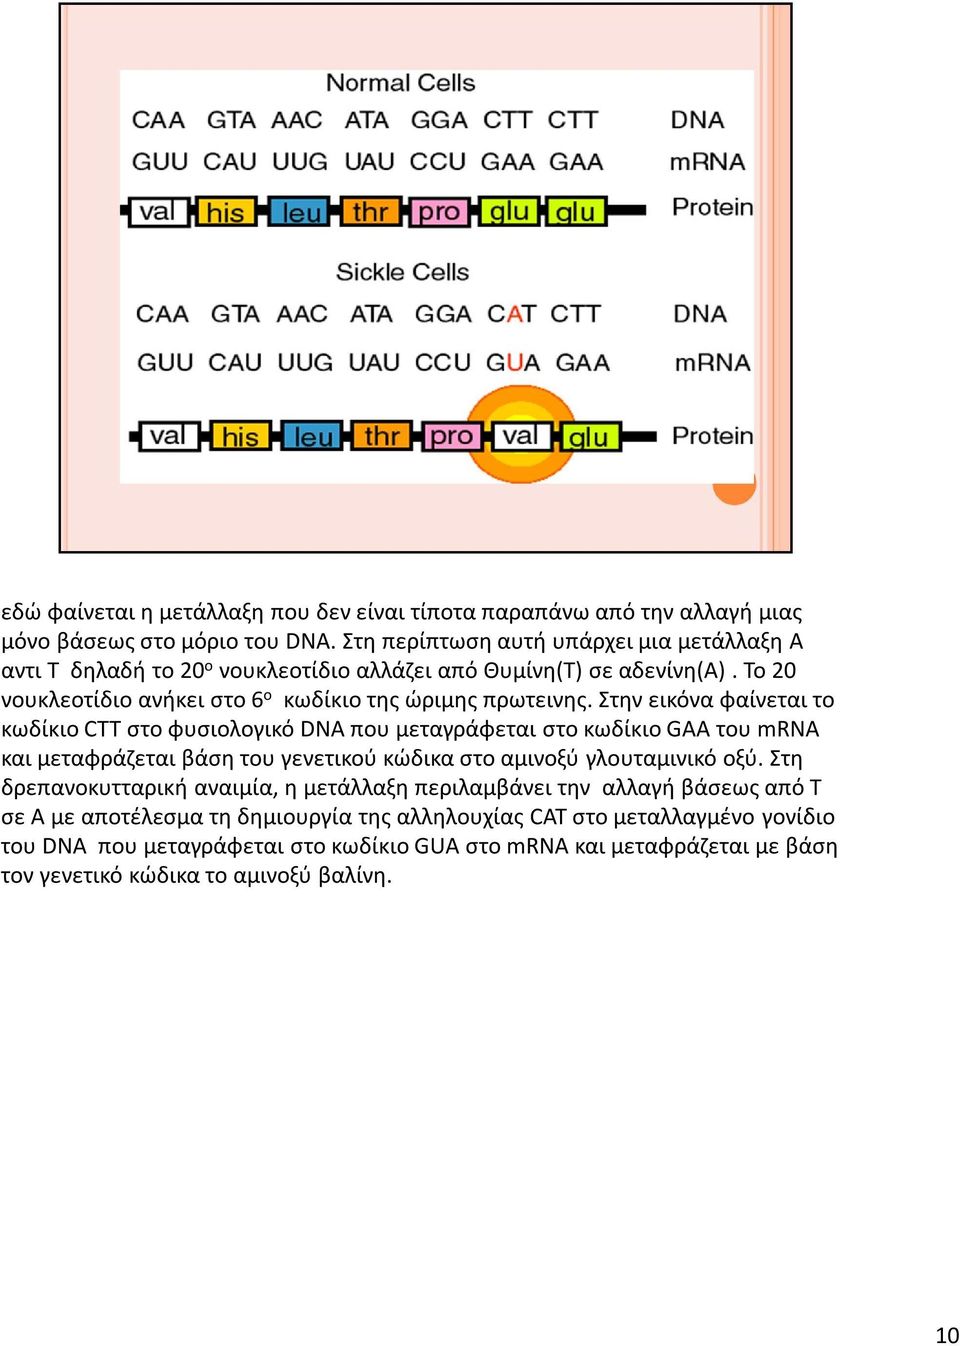 Στην εικόνα φαίνεται το κωδίκιο CTT στο φυσιολογικό DNA που μεταγράφεται στο κωδίκιο GAA του mrna και μεταφράζεται βάση του γενετικού κώδικα στο αμινοξύ γλουταμινικό οξύ.